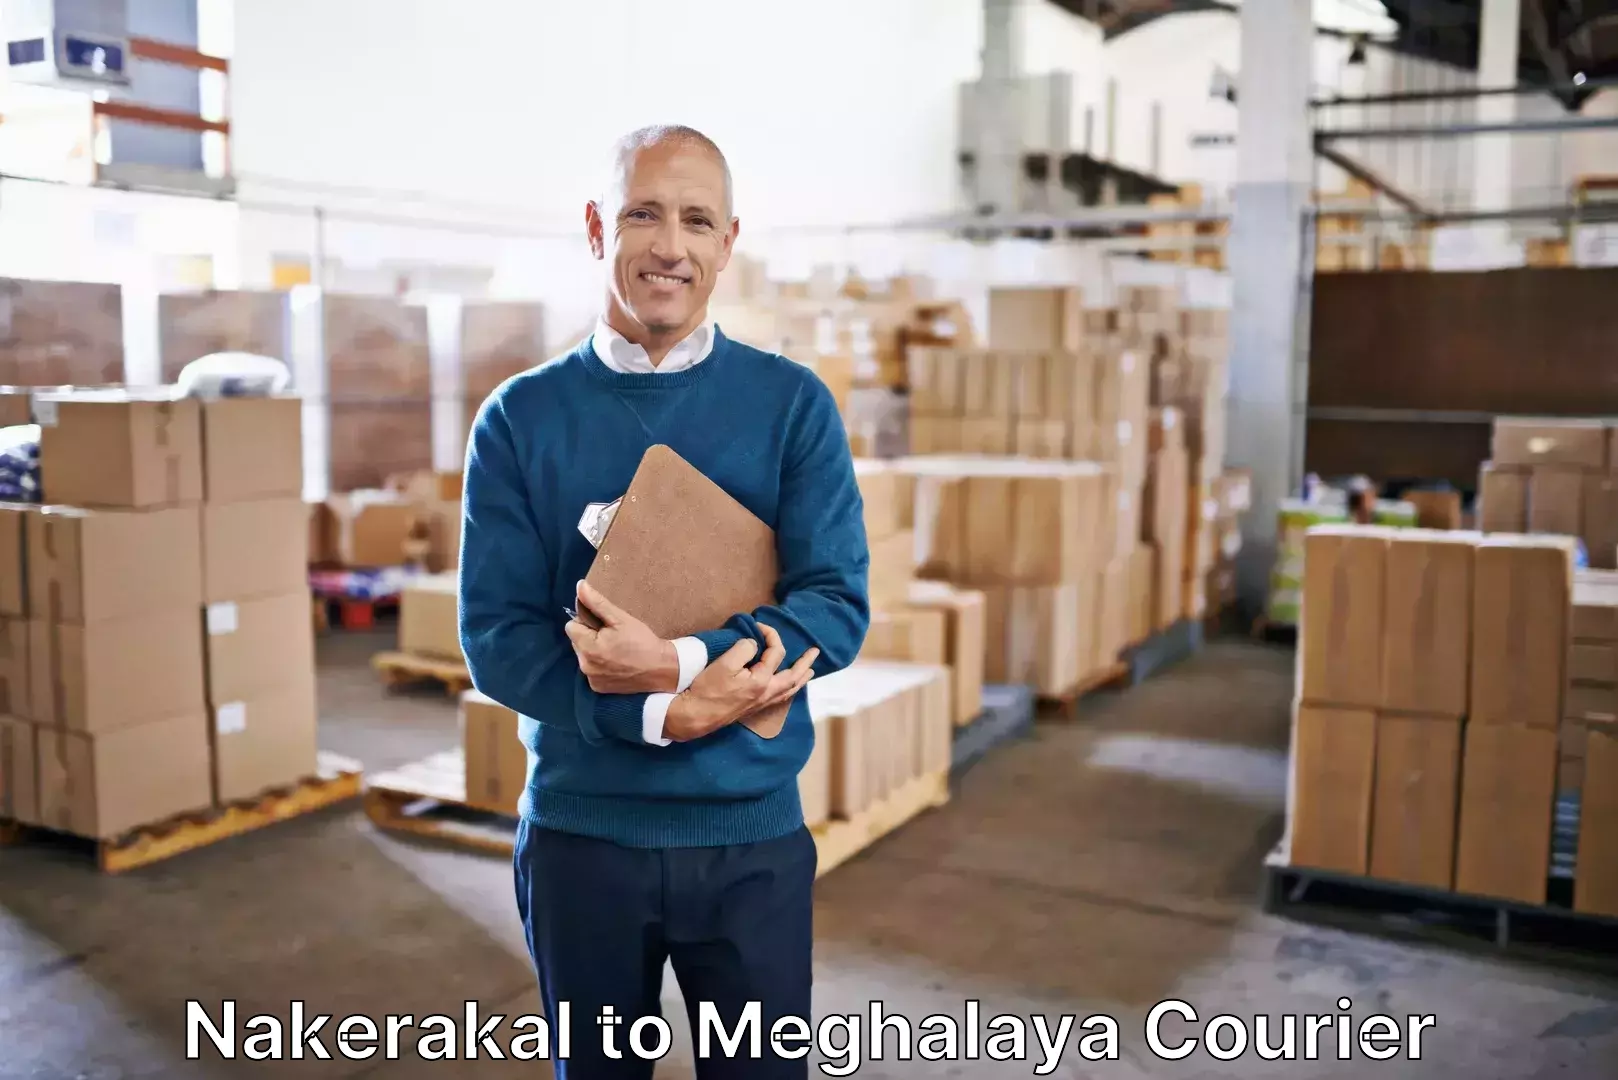 Luggage shipping service Nakerakal to Meghalaya